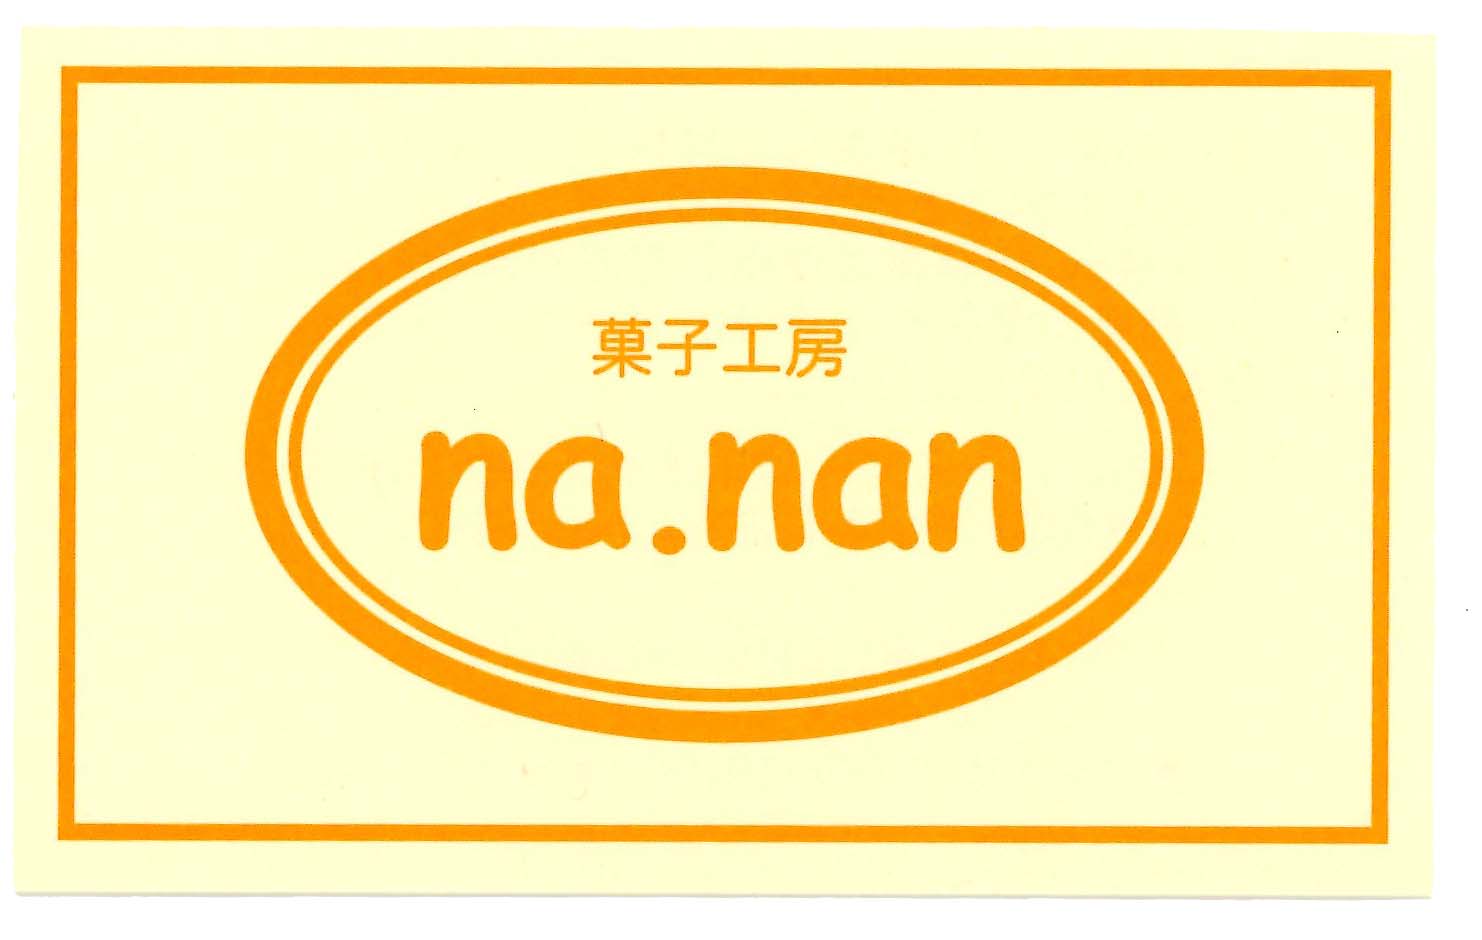 菓子工房nanan.jpg